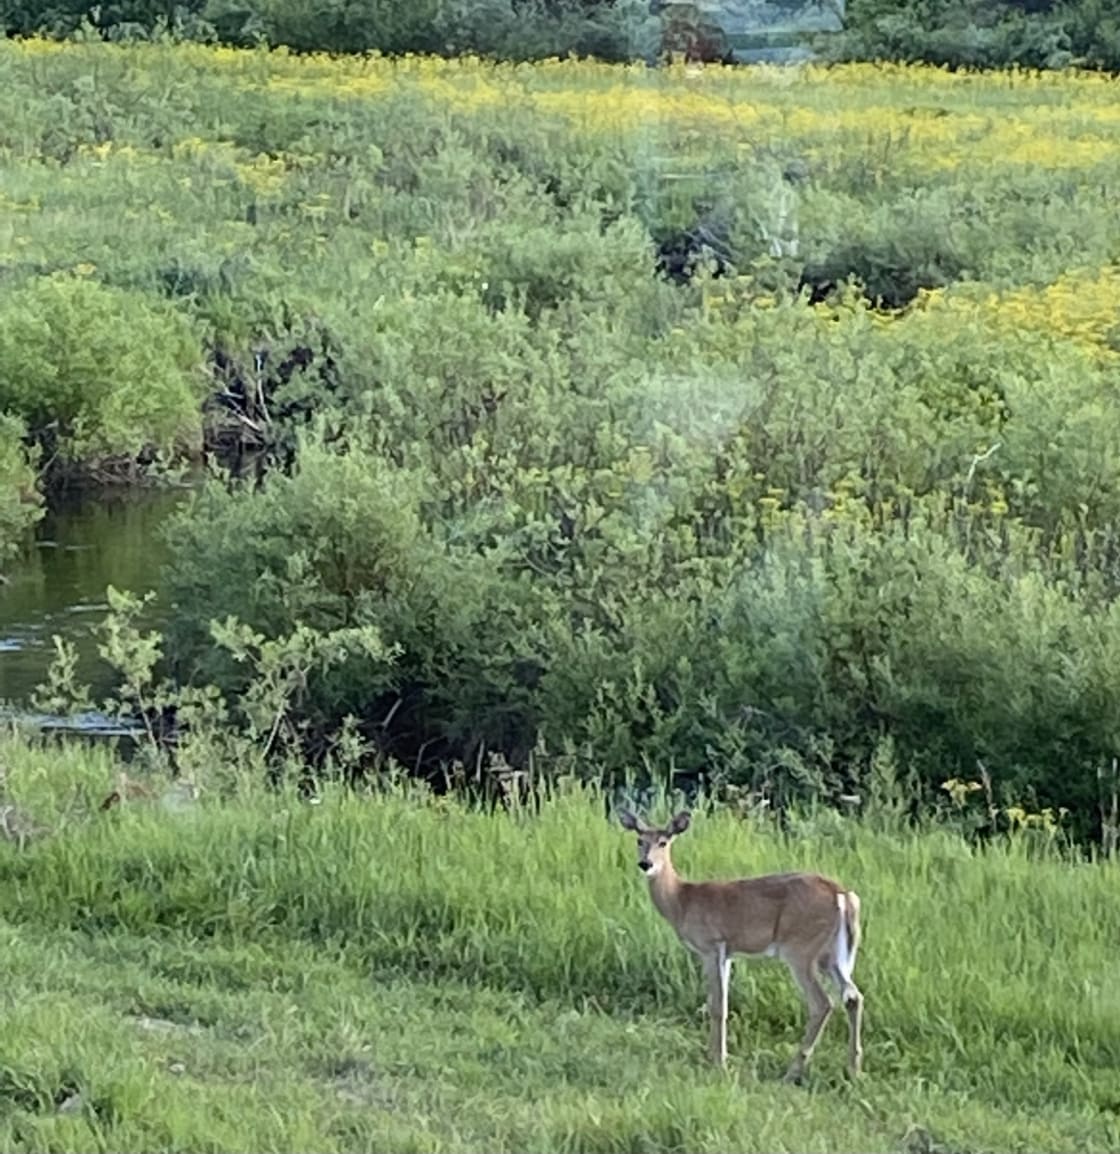 Enjoy watching deer graze.  